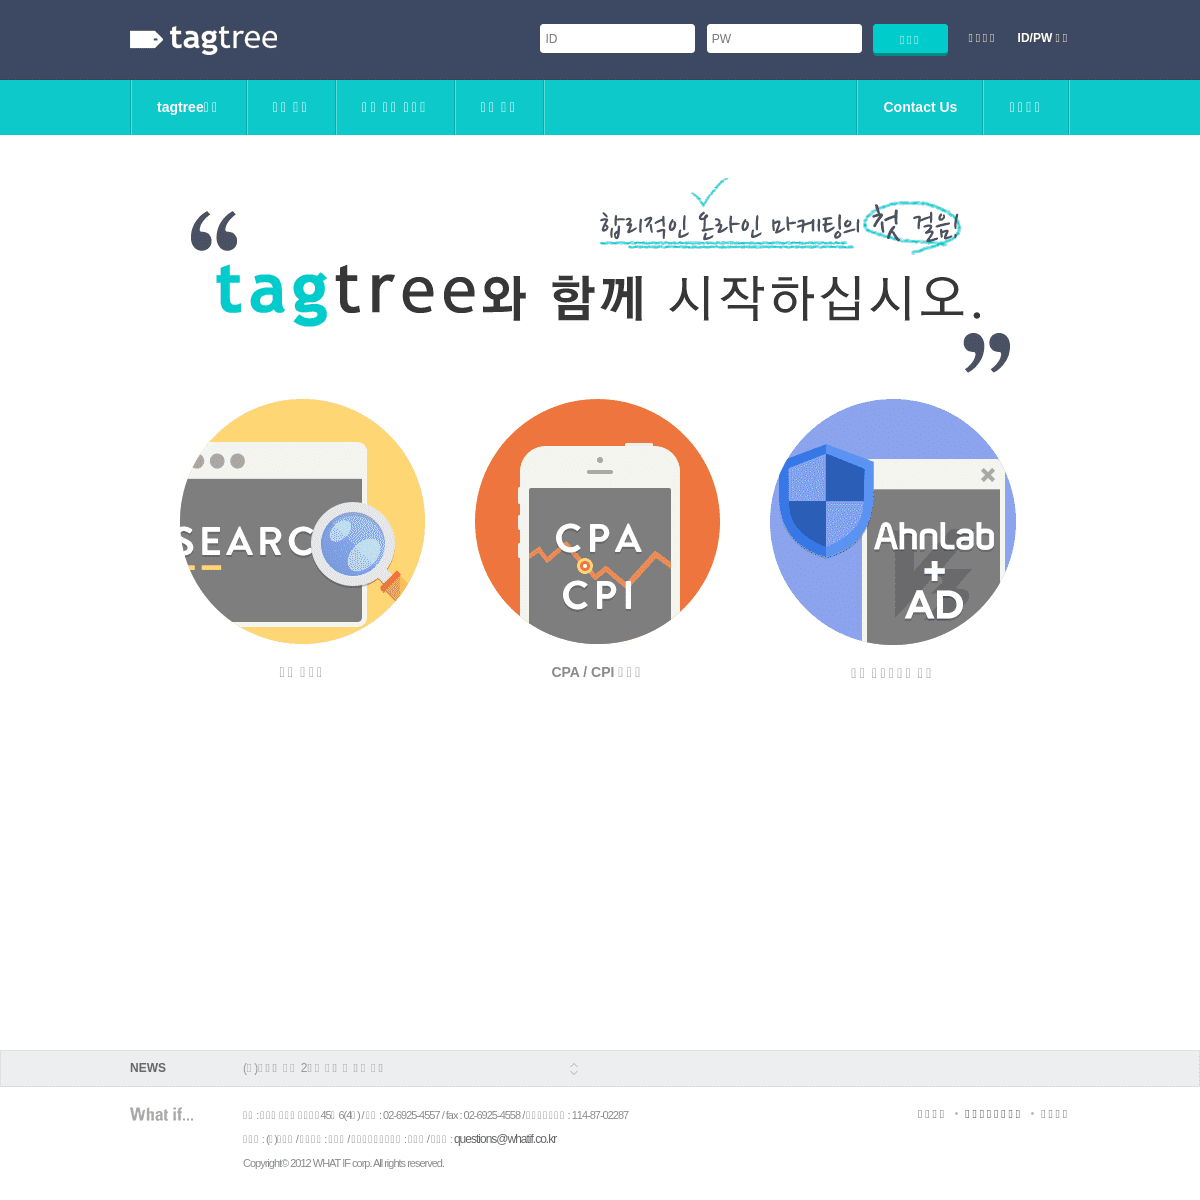 A complete backup of tagtree.co.kr